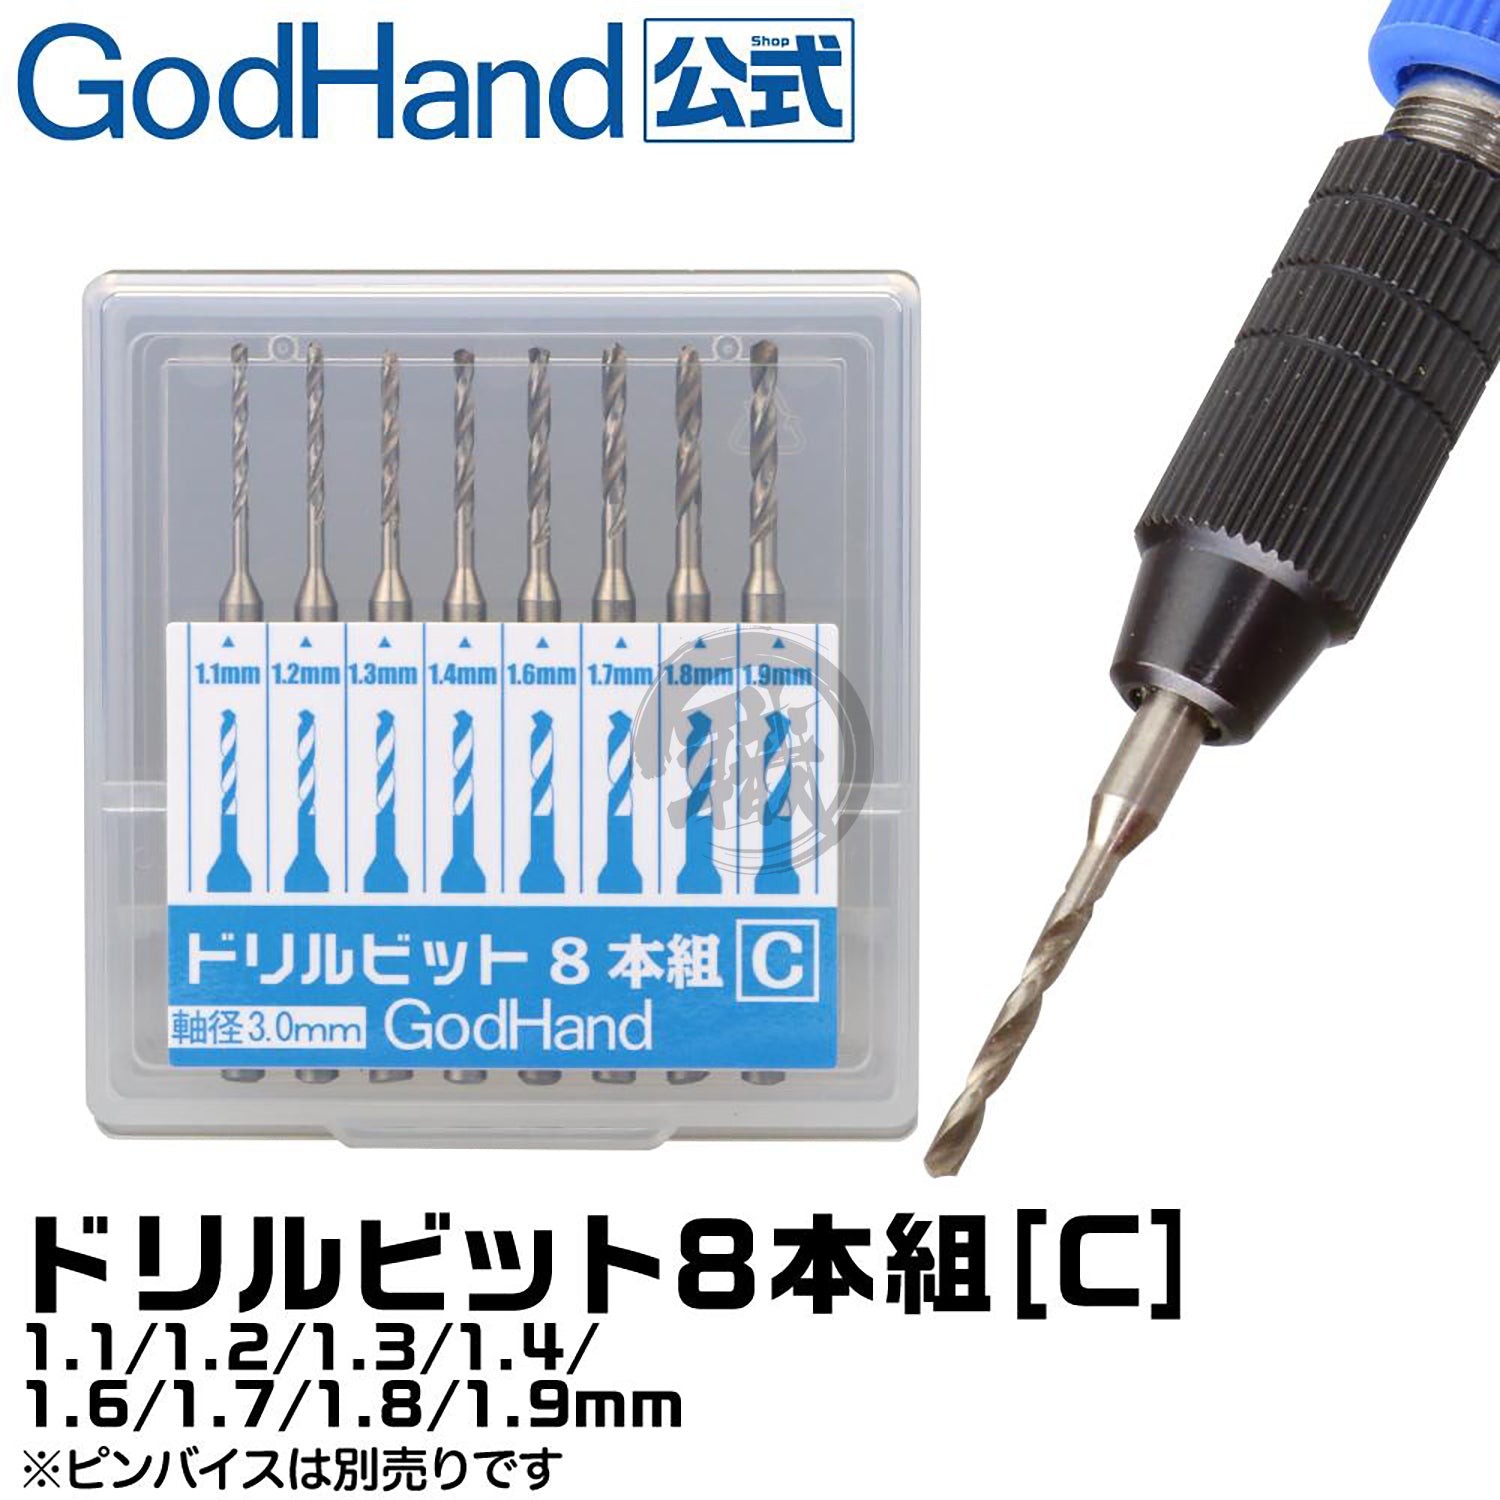 Godhand Tools - Drill Bit Set C [Set of 8] - ShokuninGunpla